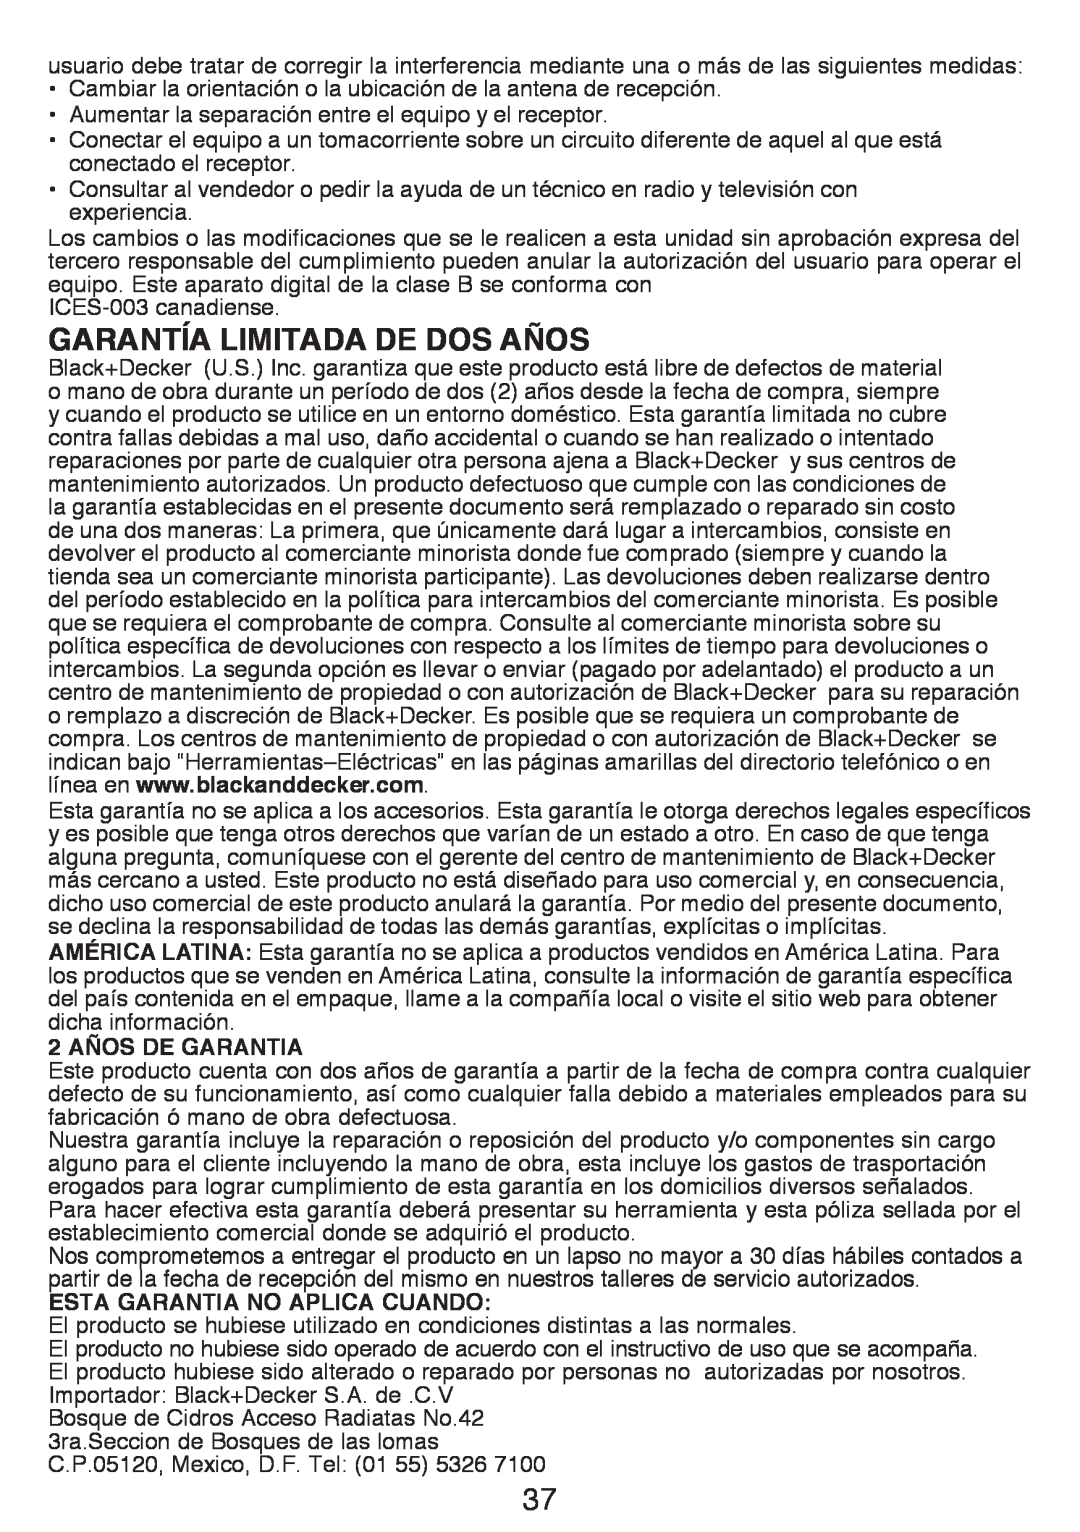 Black & Decker GH3000R instruction manual GARANTÍA LIMITADA DE Dos AÑOS, 2 AÑOS DE GARANTIA, Esta Garantia No Aplica Cuando 